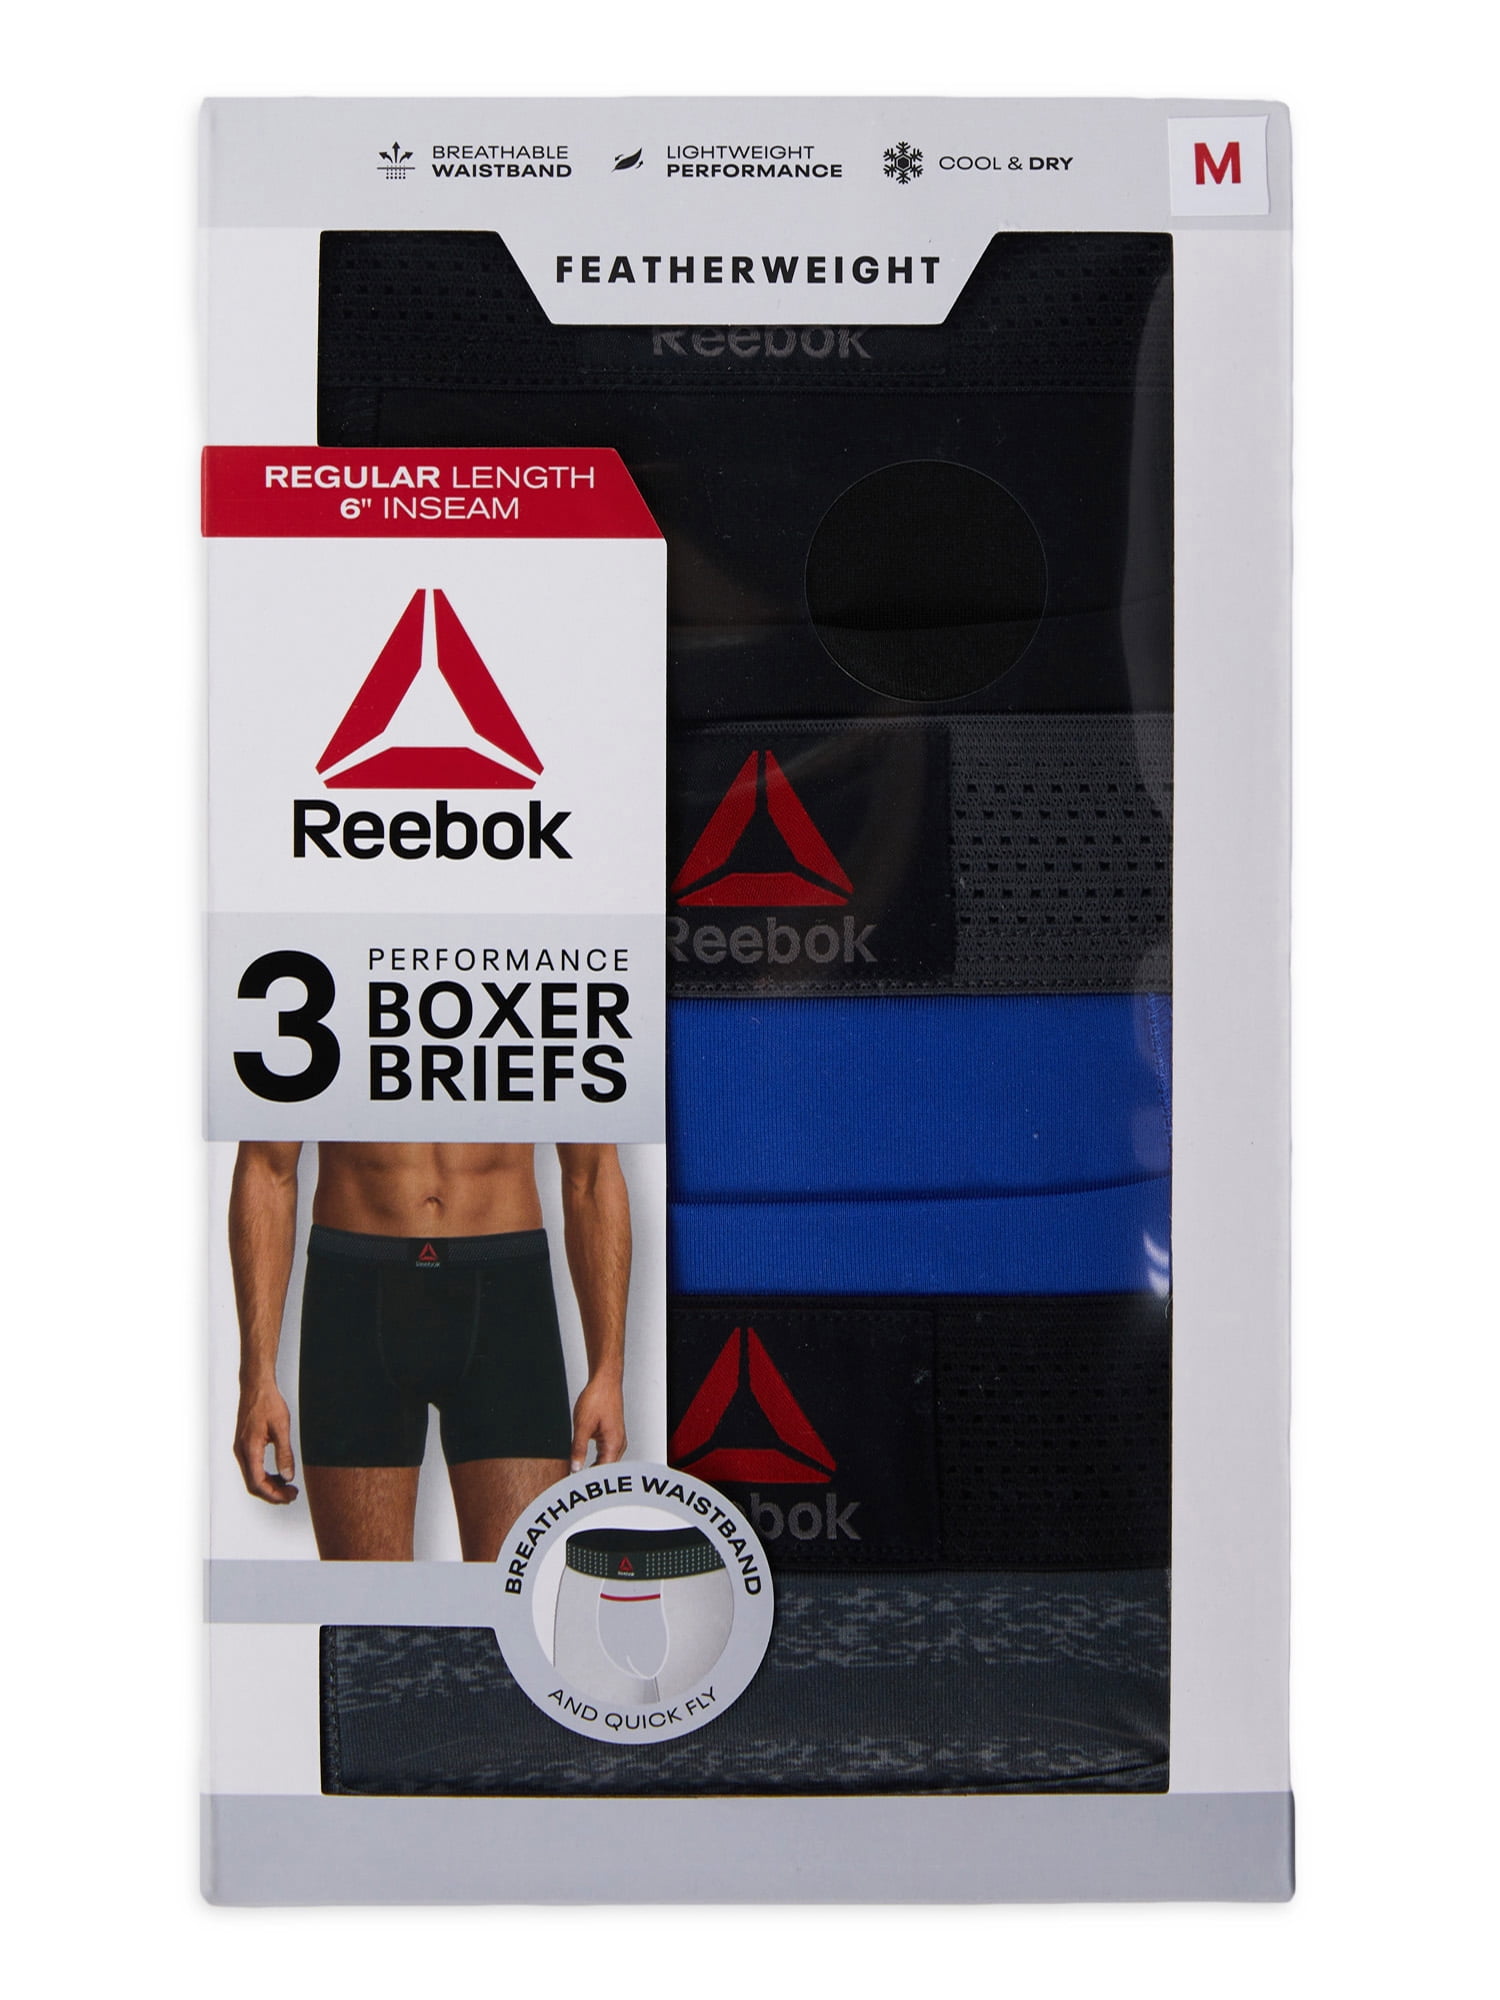 Reebok Men's Featherweight Performance Boxer Briefs Underwear